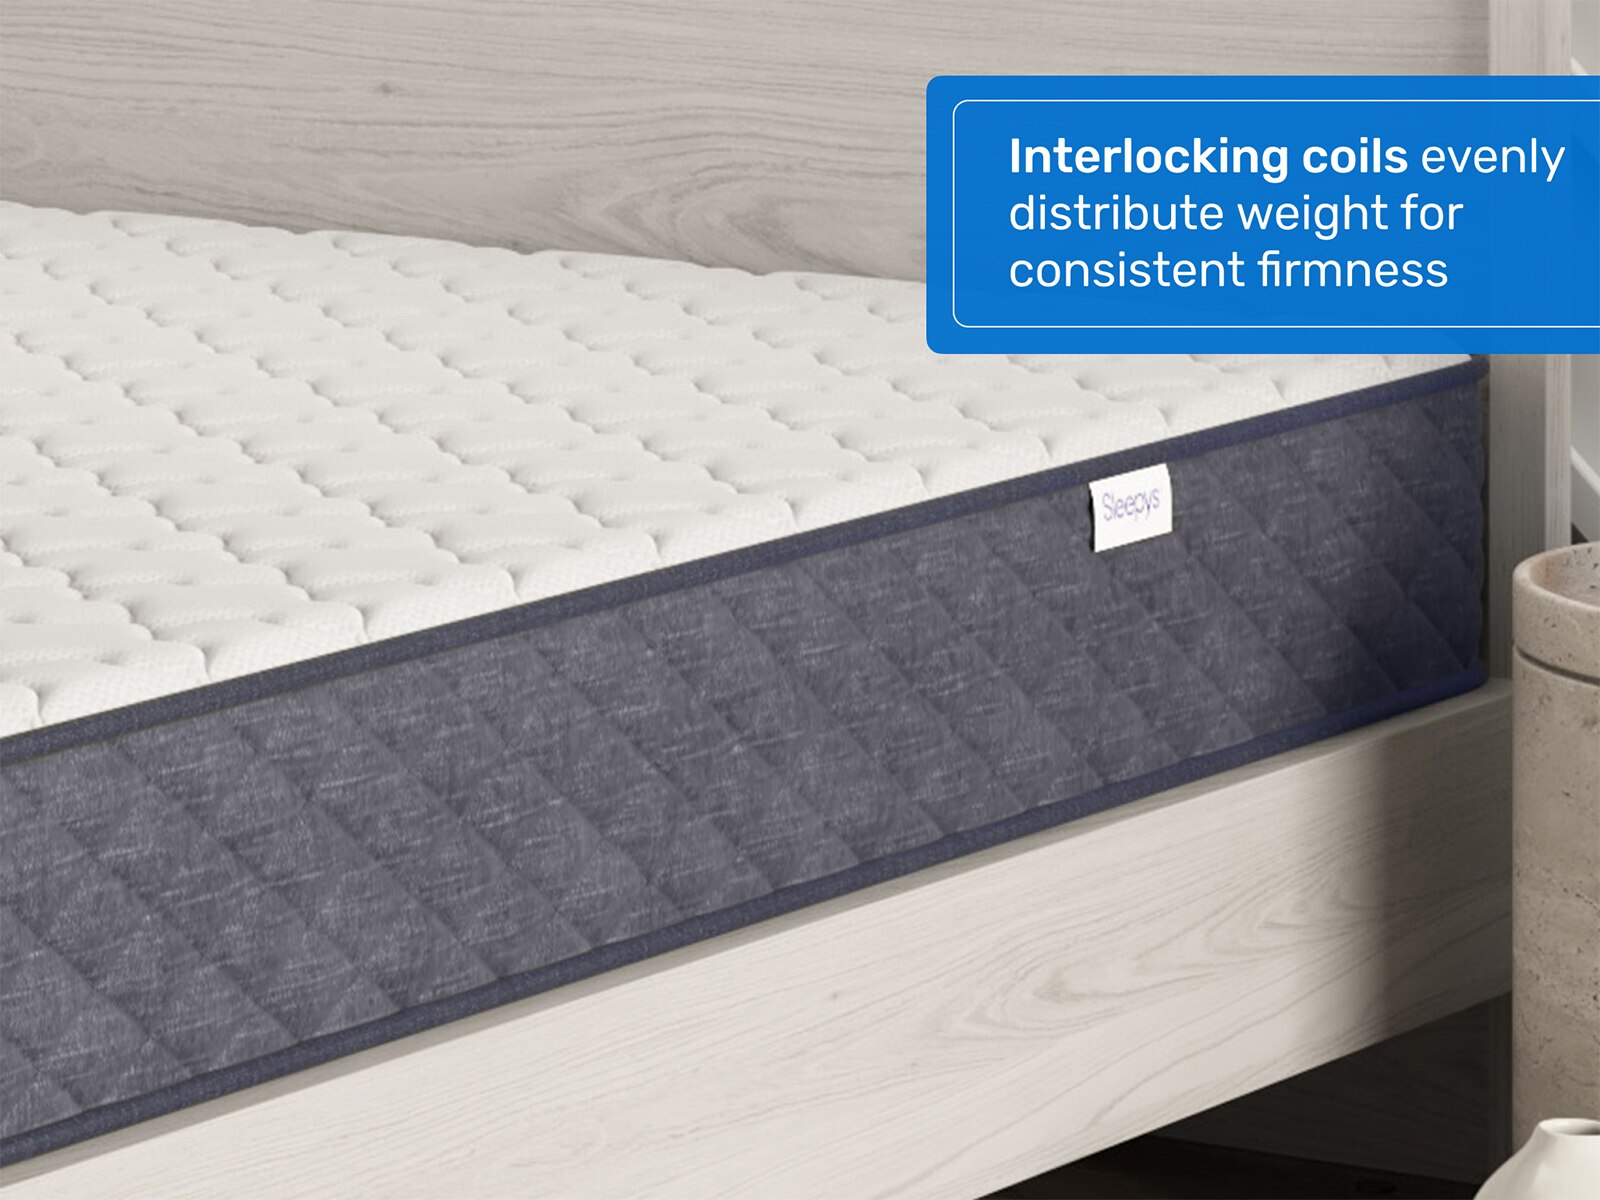 sleepy's rest 10 firm innerspring mattress